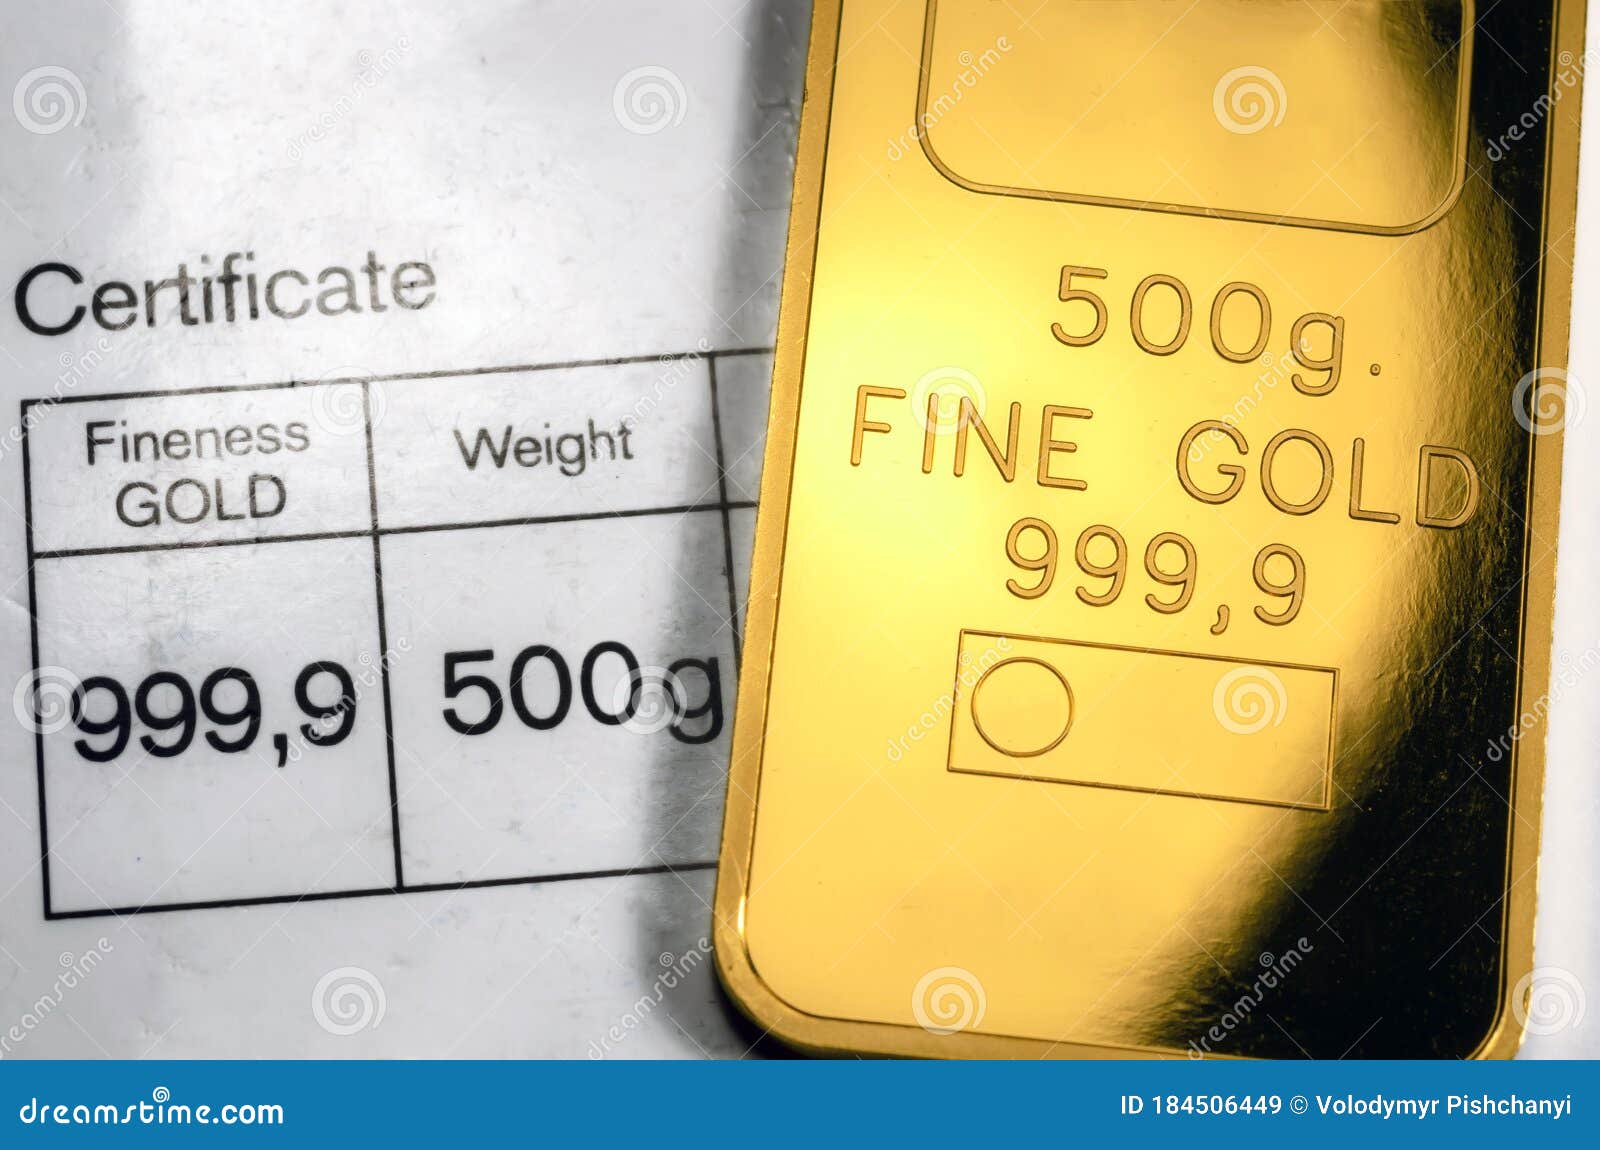 500 граммов в рублях. Стандартный золотой слиток. 500 Грамм золота. Слиток 500 грамм. Вес золотого слитка.